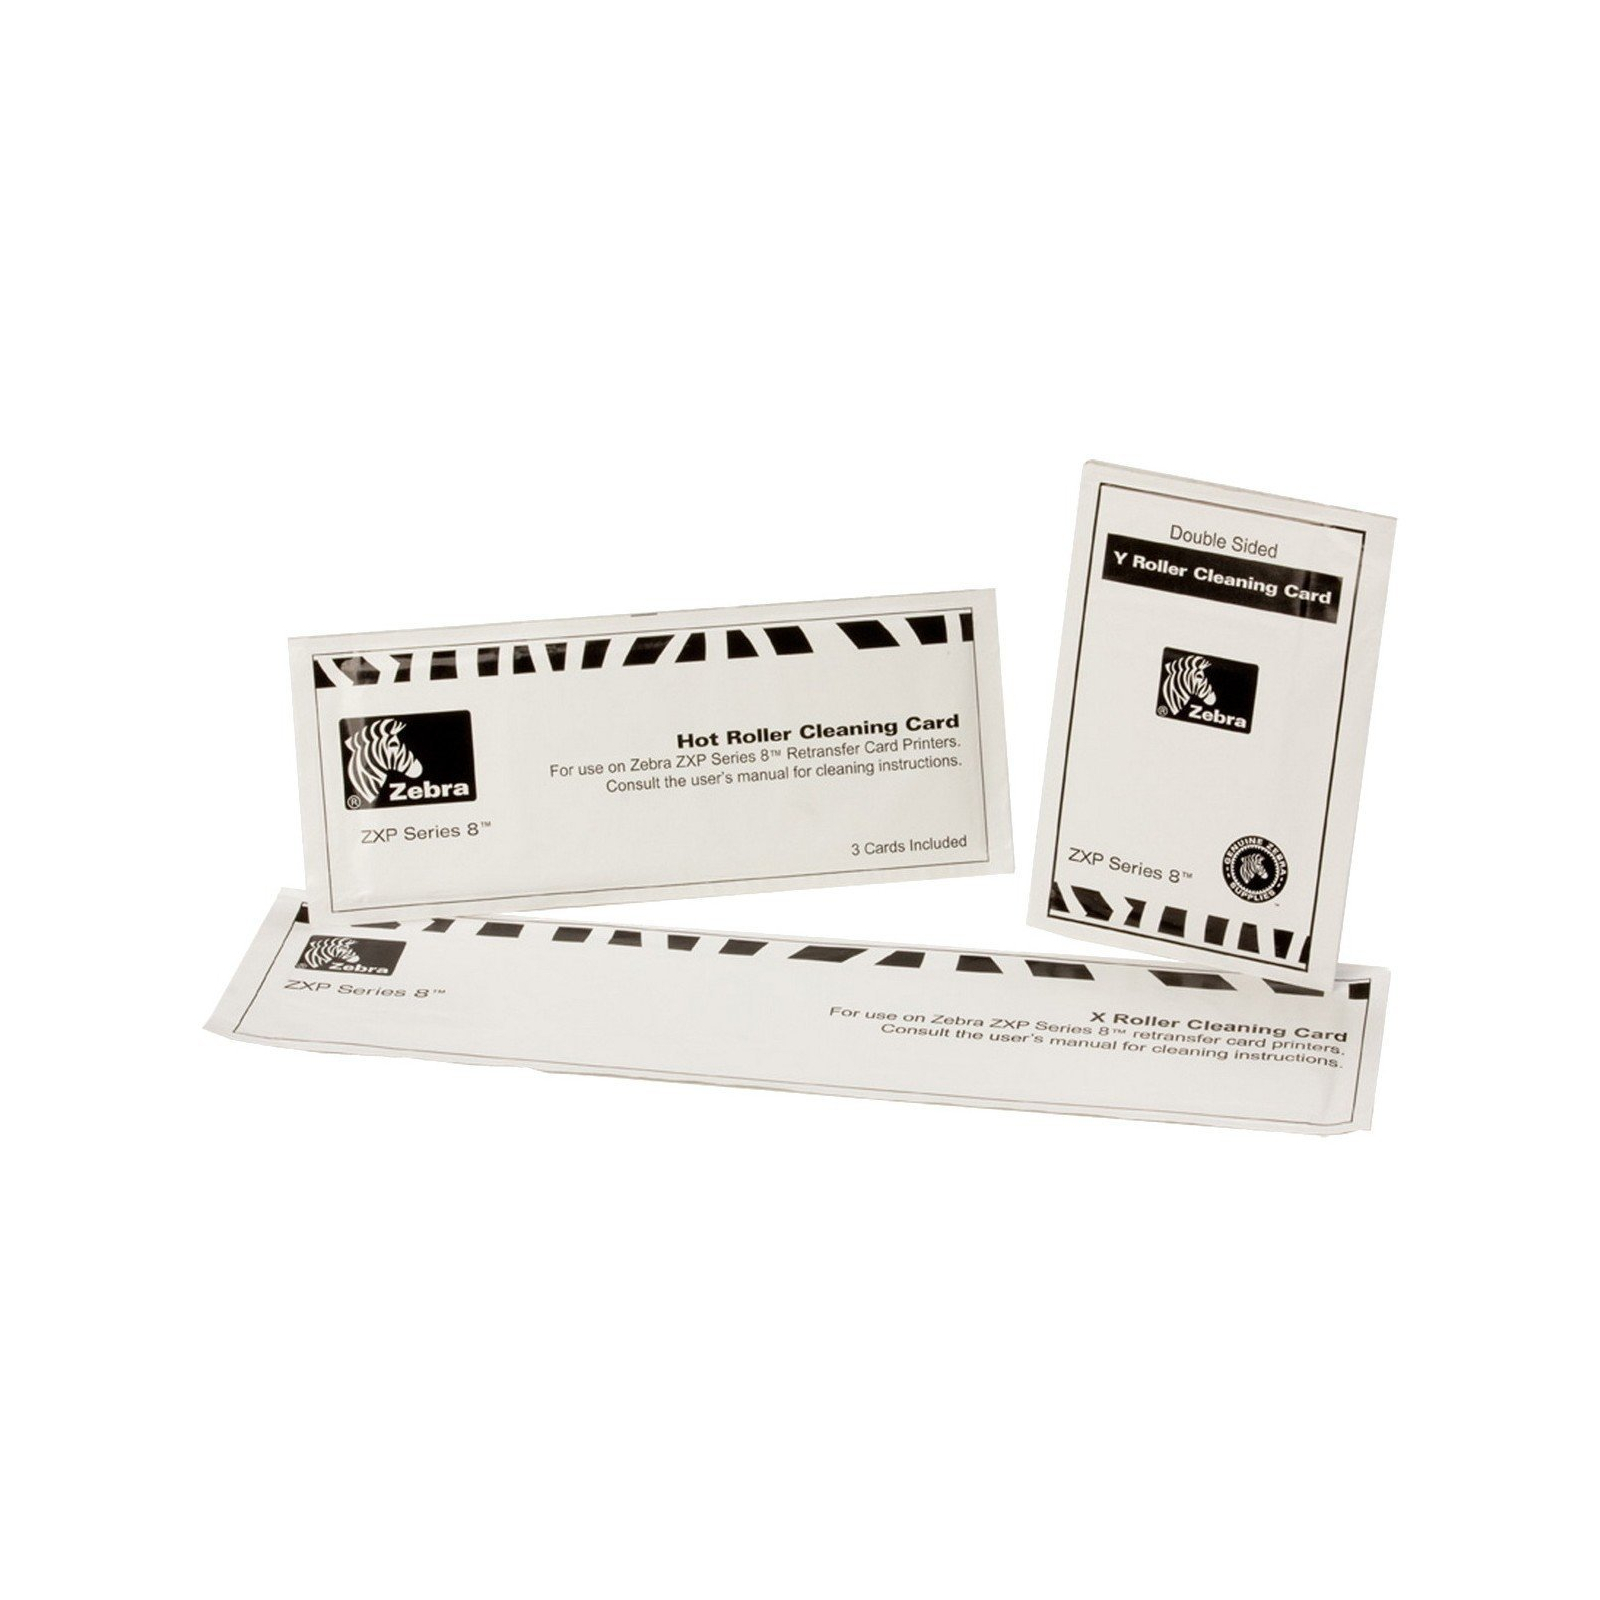 Комплект чистячих карт Zebra 12 - X и Y карт, ролик очищення / и 3-карты горячего очищени (105999-801)